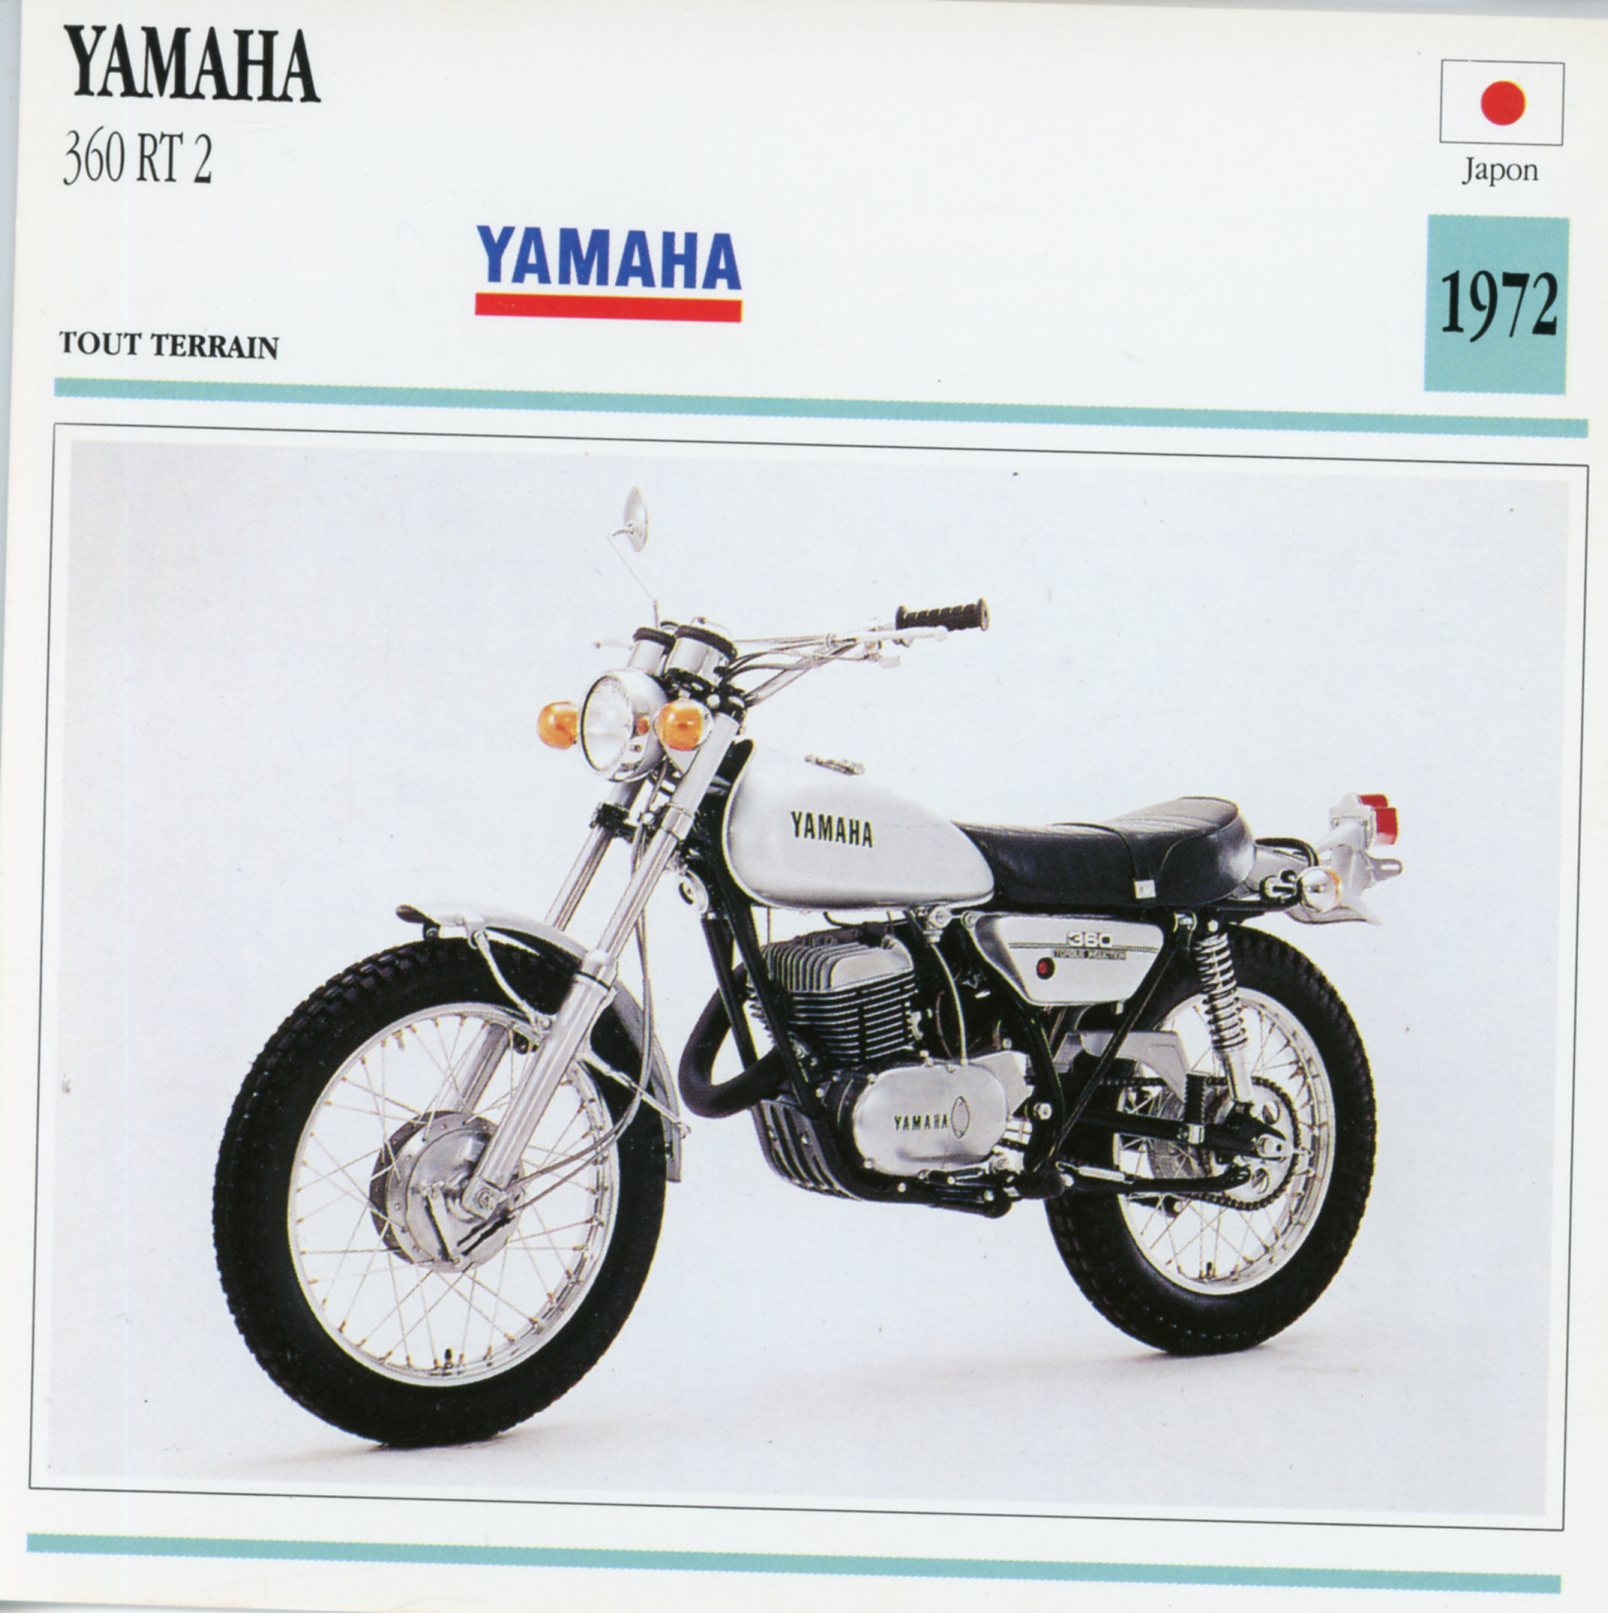 FICHE-MOTO-YAMAHA-360-RT-RT2-1971-LEMASTERBROCKERS-littérature-brochure